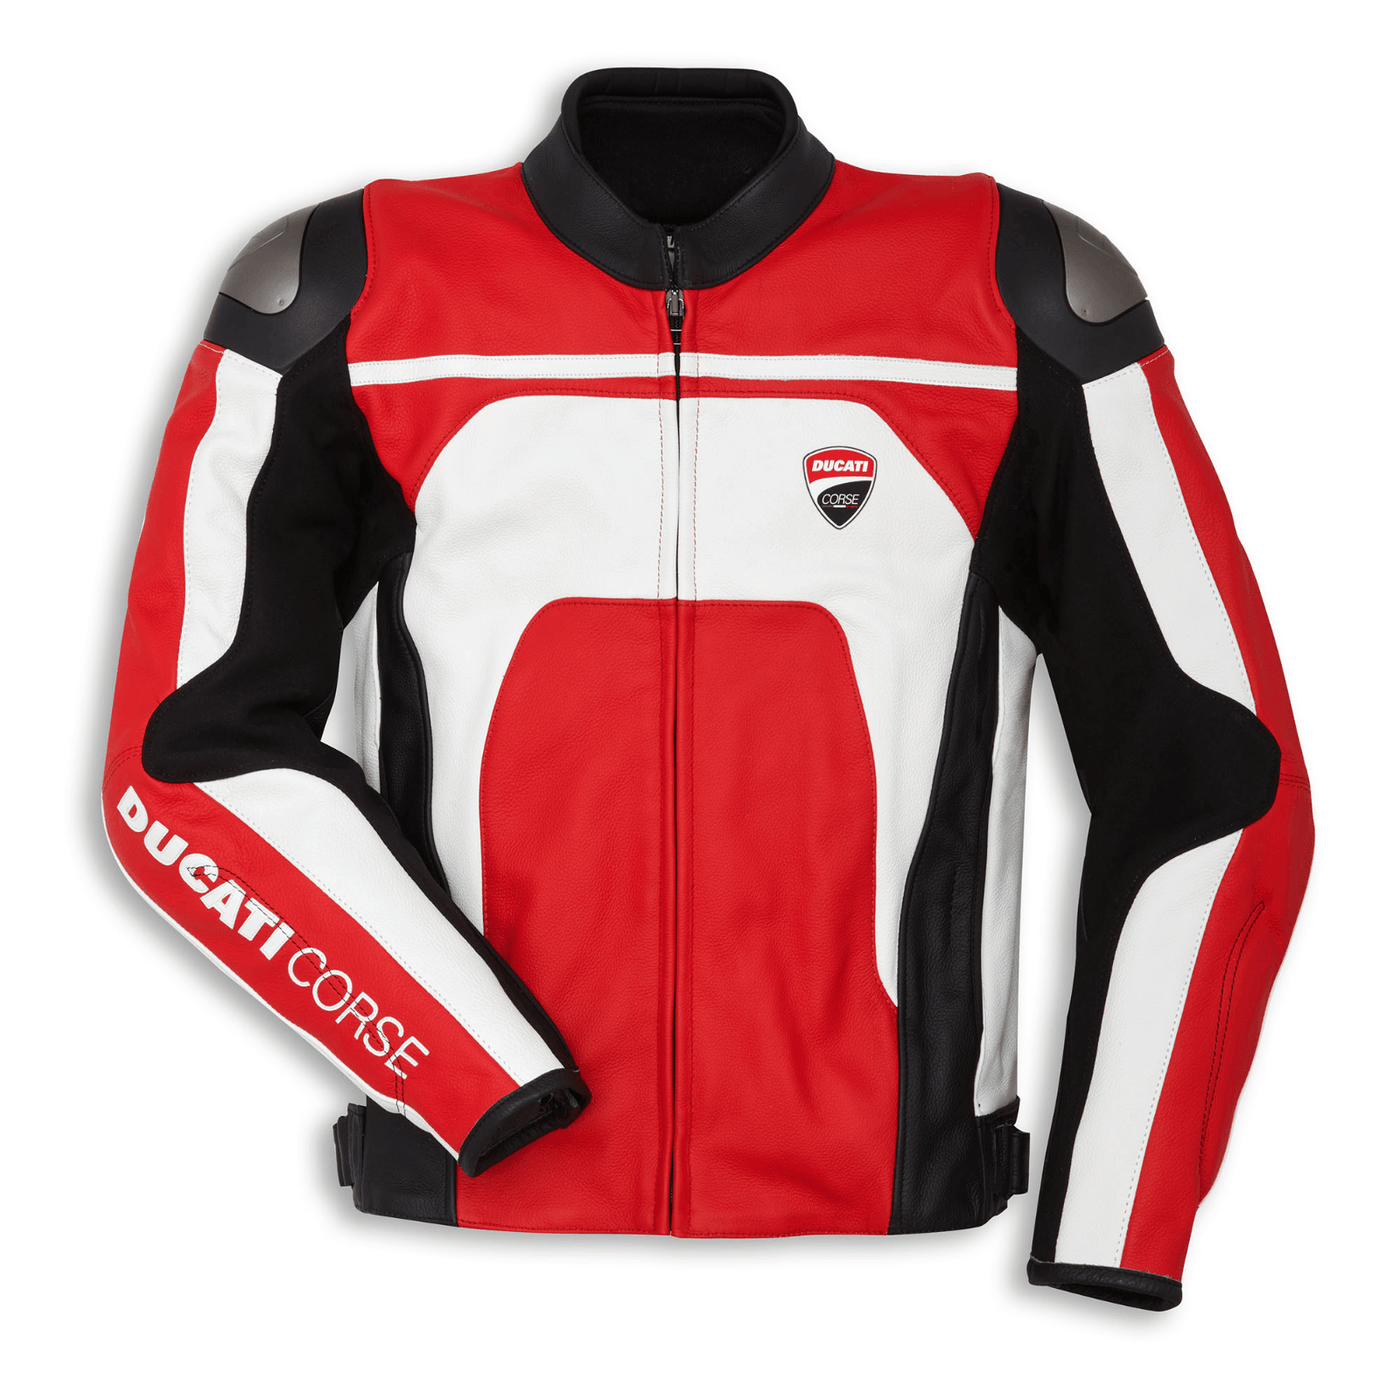 ZMJ-040 Racing Motorbike/Motorcycle Leather Jacket Custom Made Jacket For Bikers - ZEES MOTOR SPORTS